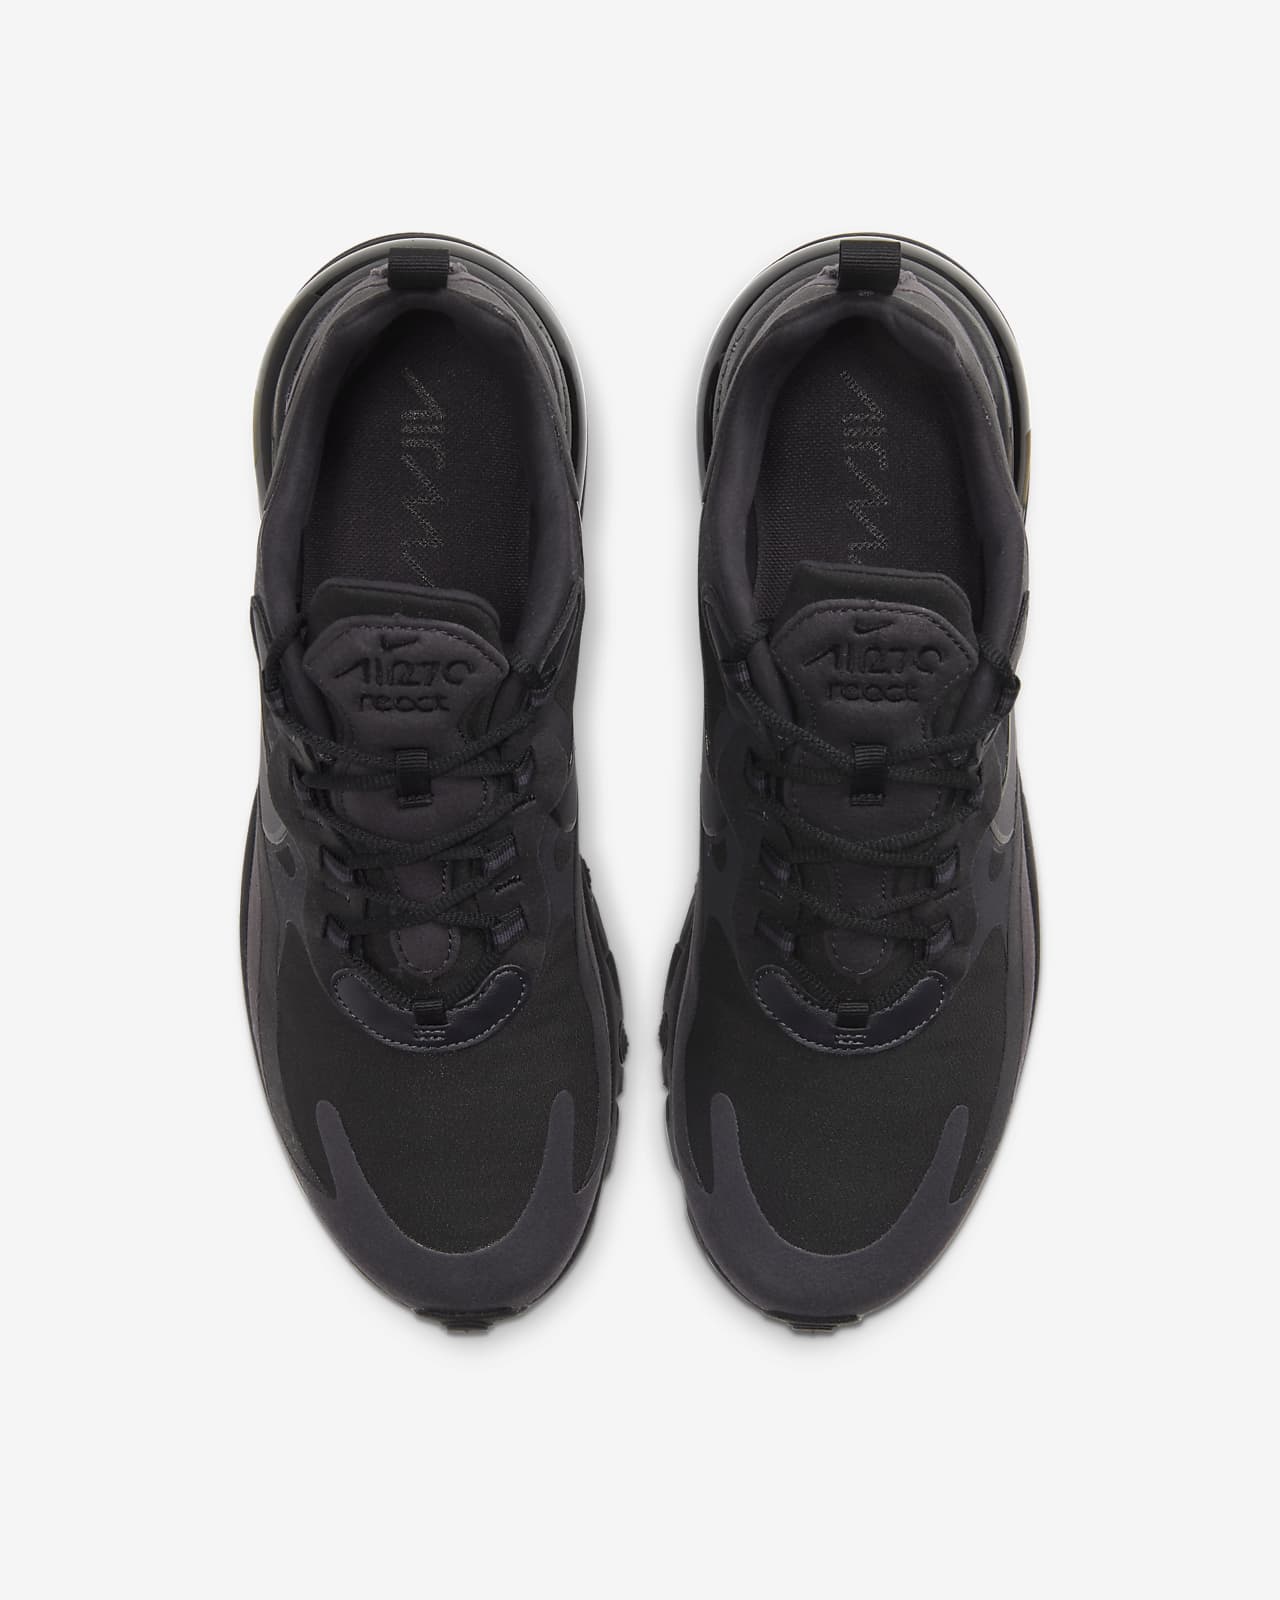 الزوائد اللحمية Nike Air Max 270 React Men's Shoe. Nike.com الزوائد اللحمية